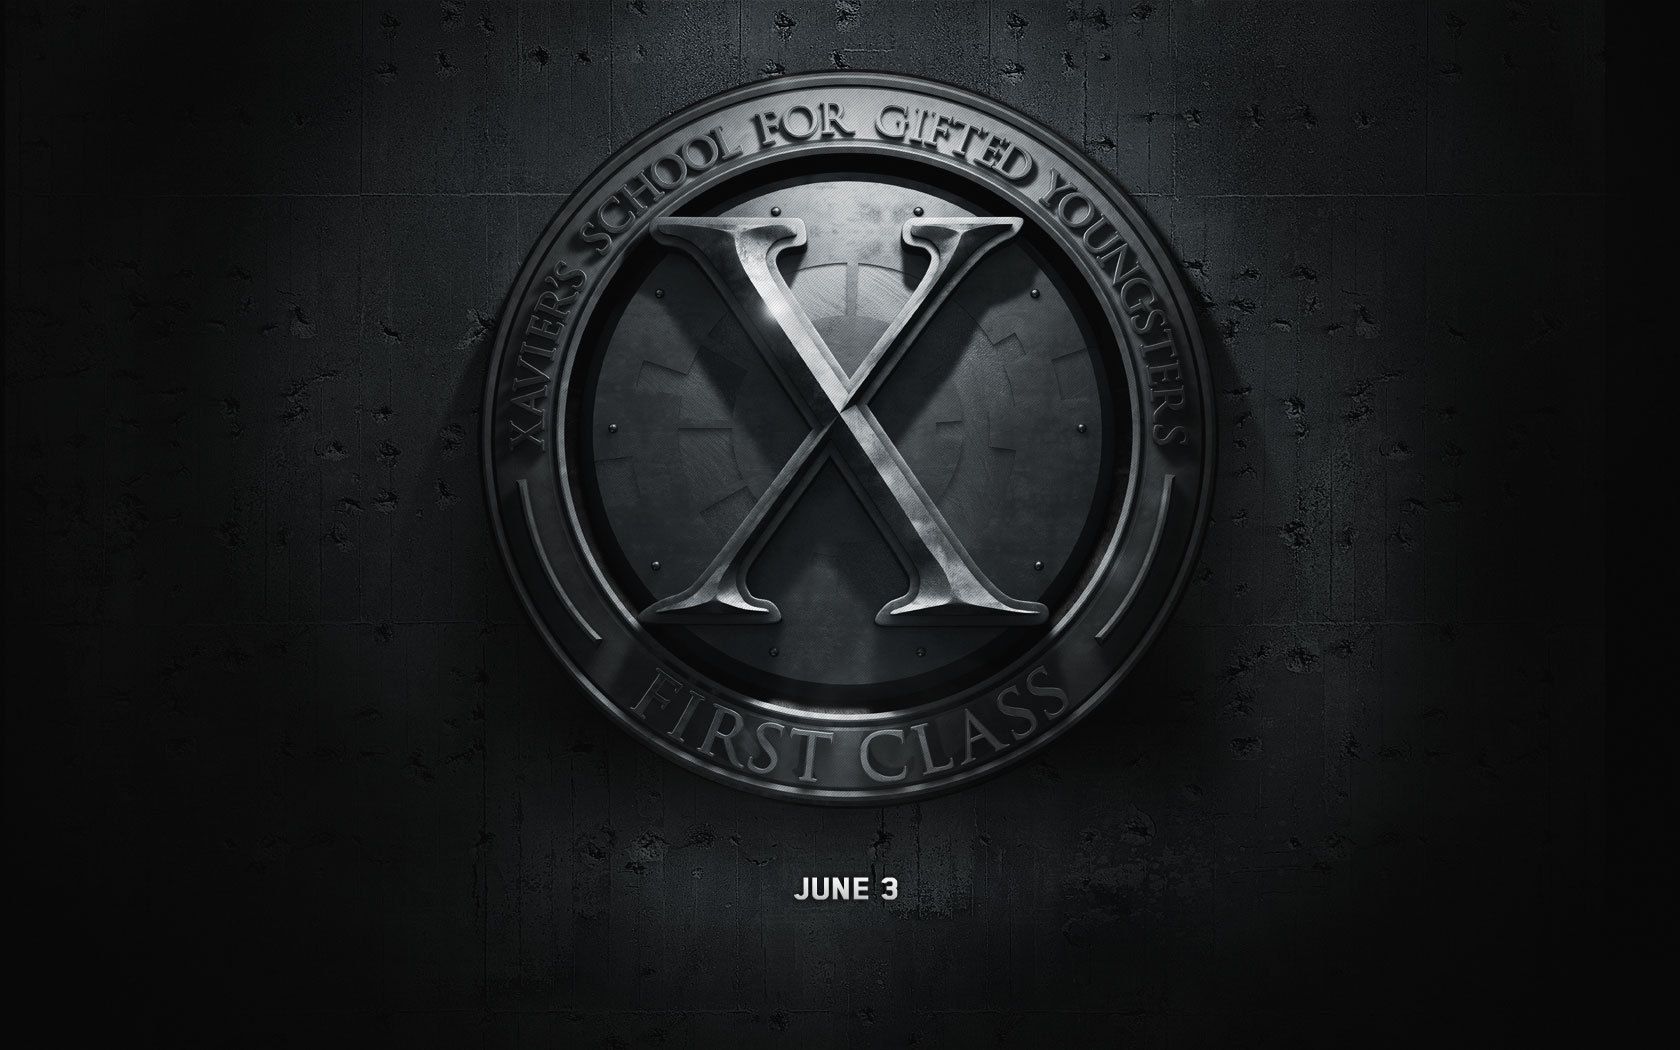 X-Men: First Class - X-men THE MOVIE Wallpaper (22383300) - Fanpop